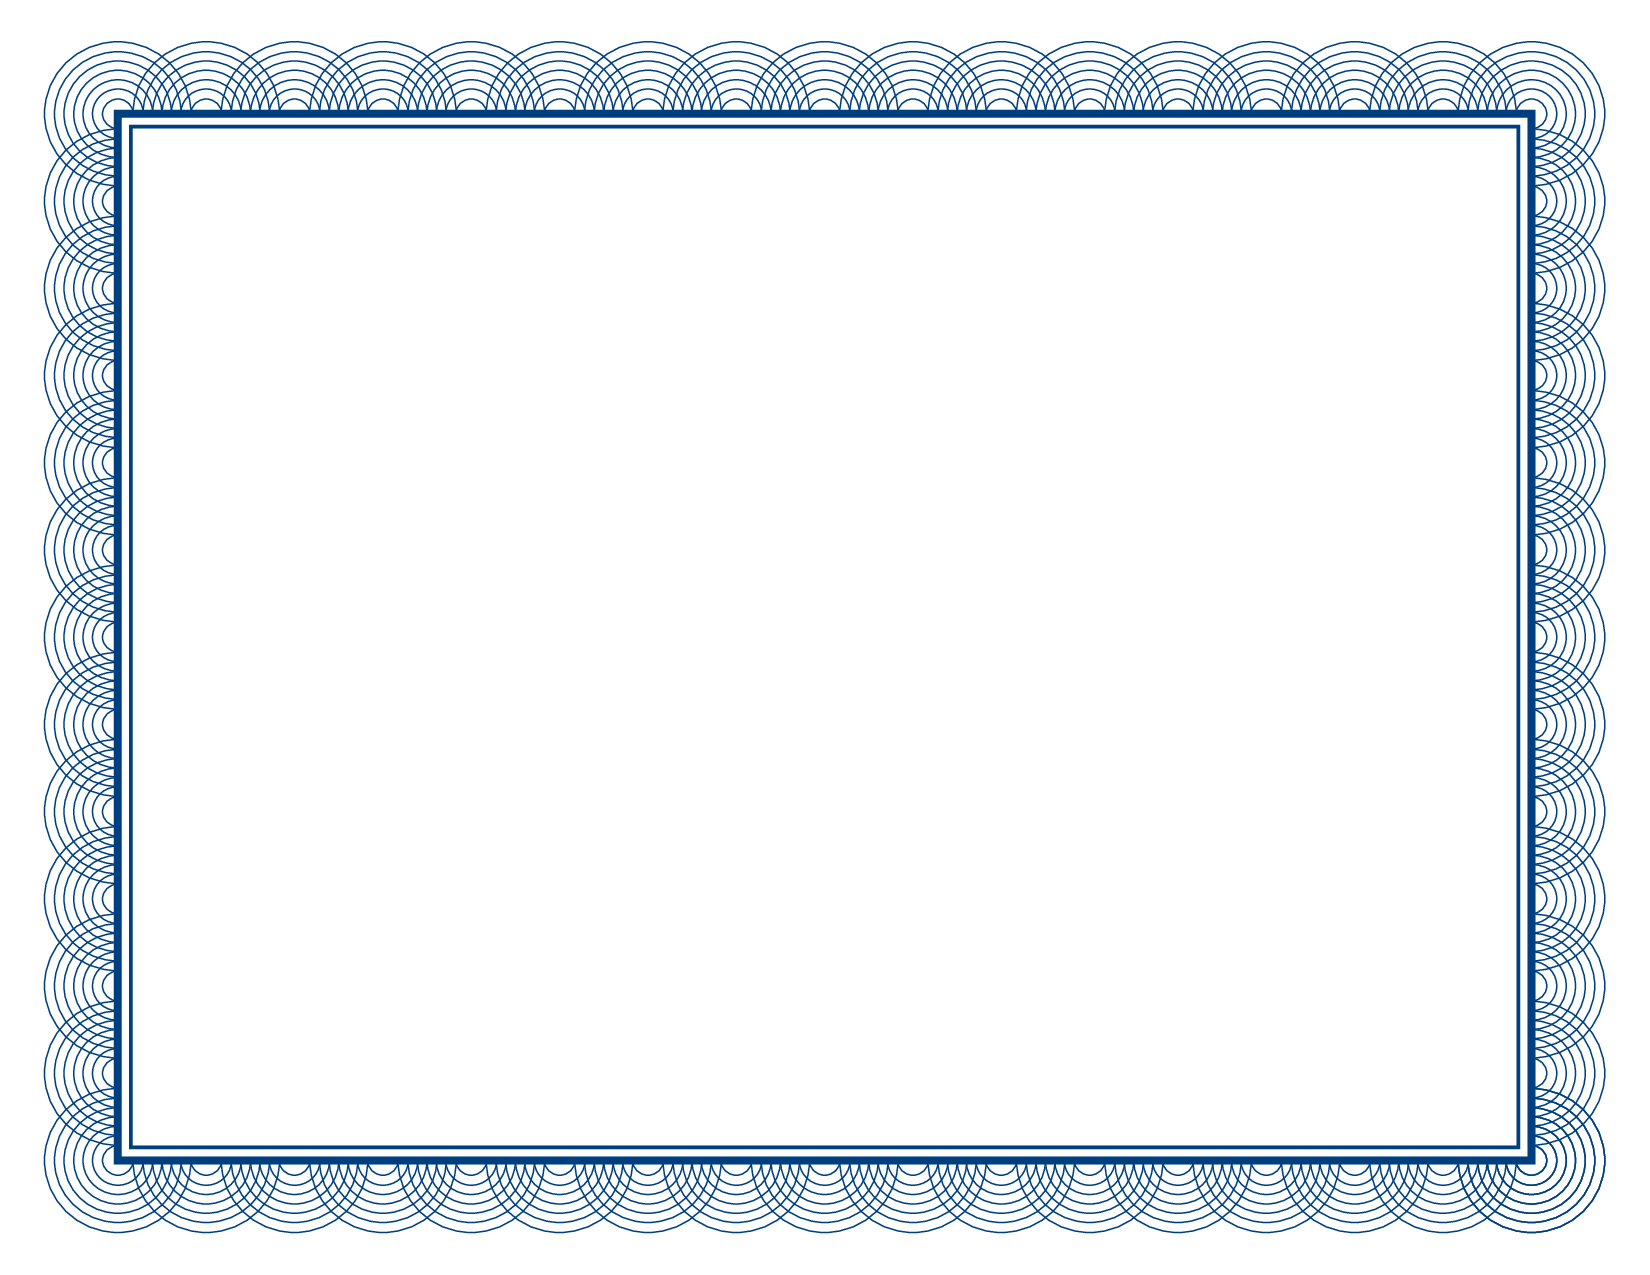 Silver Certificate Border Cli